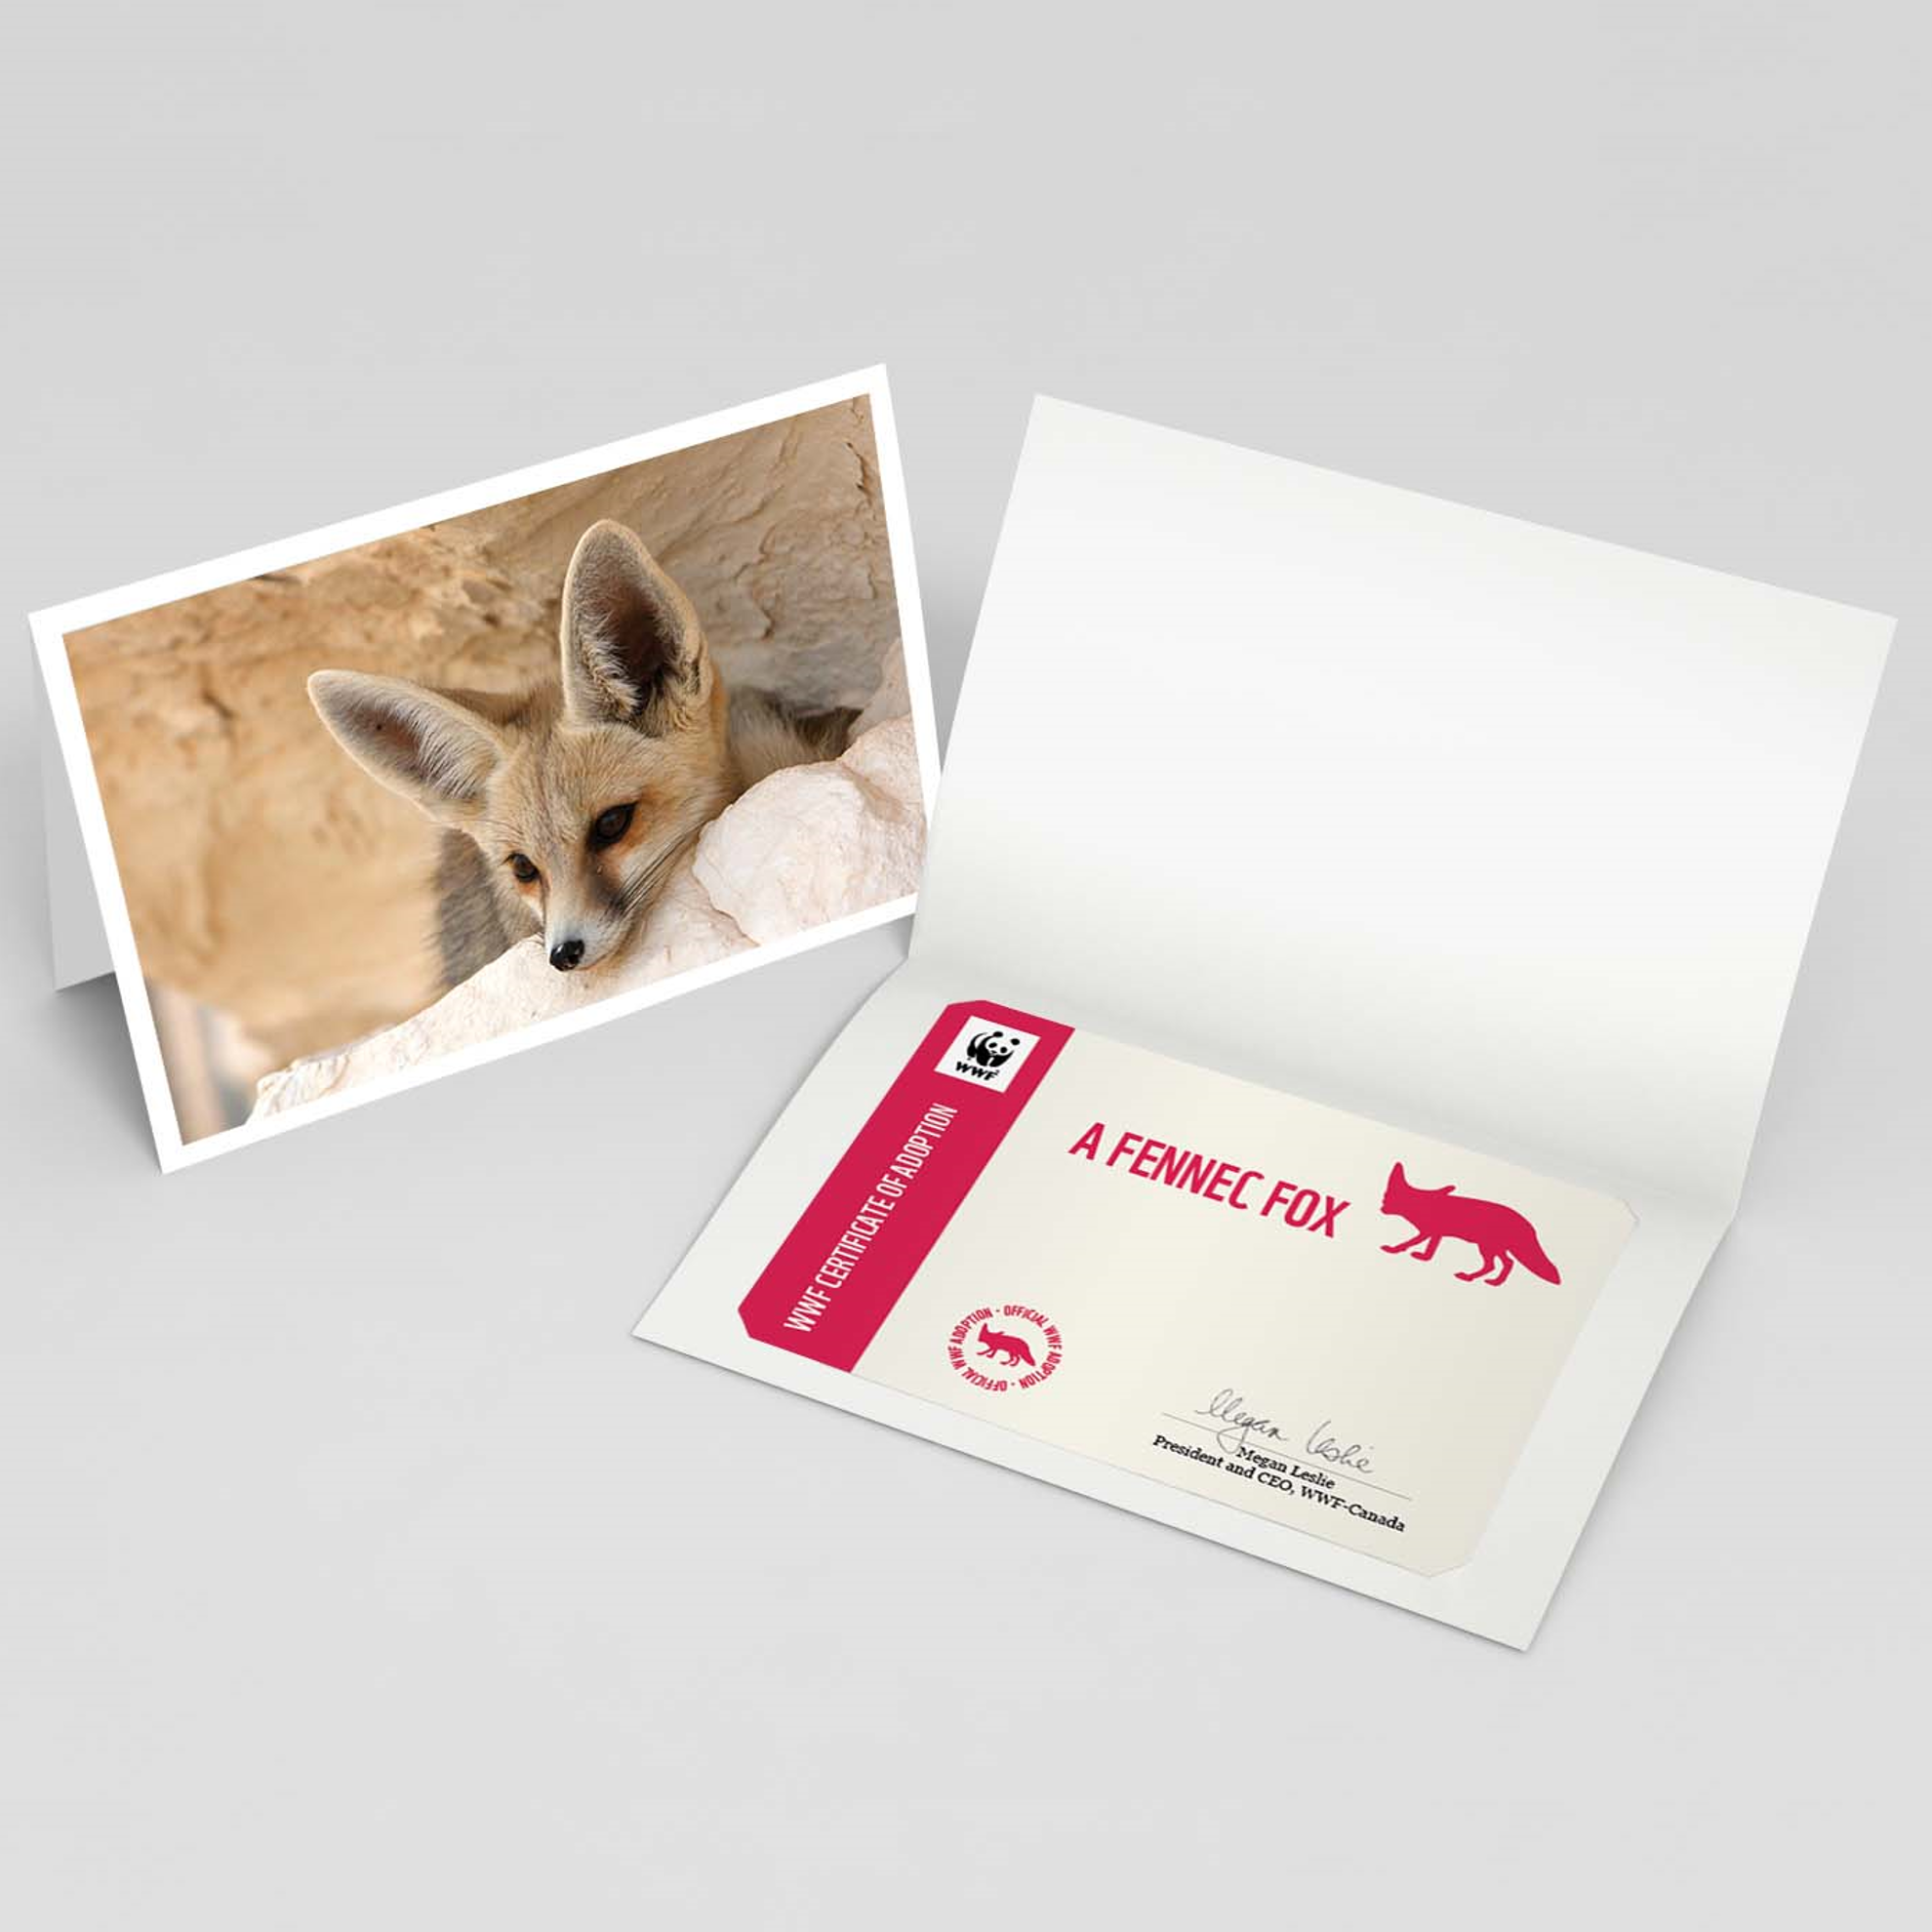 Fennec fox adoption card - WWF-Canada